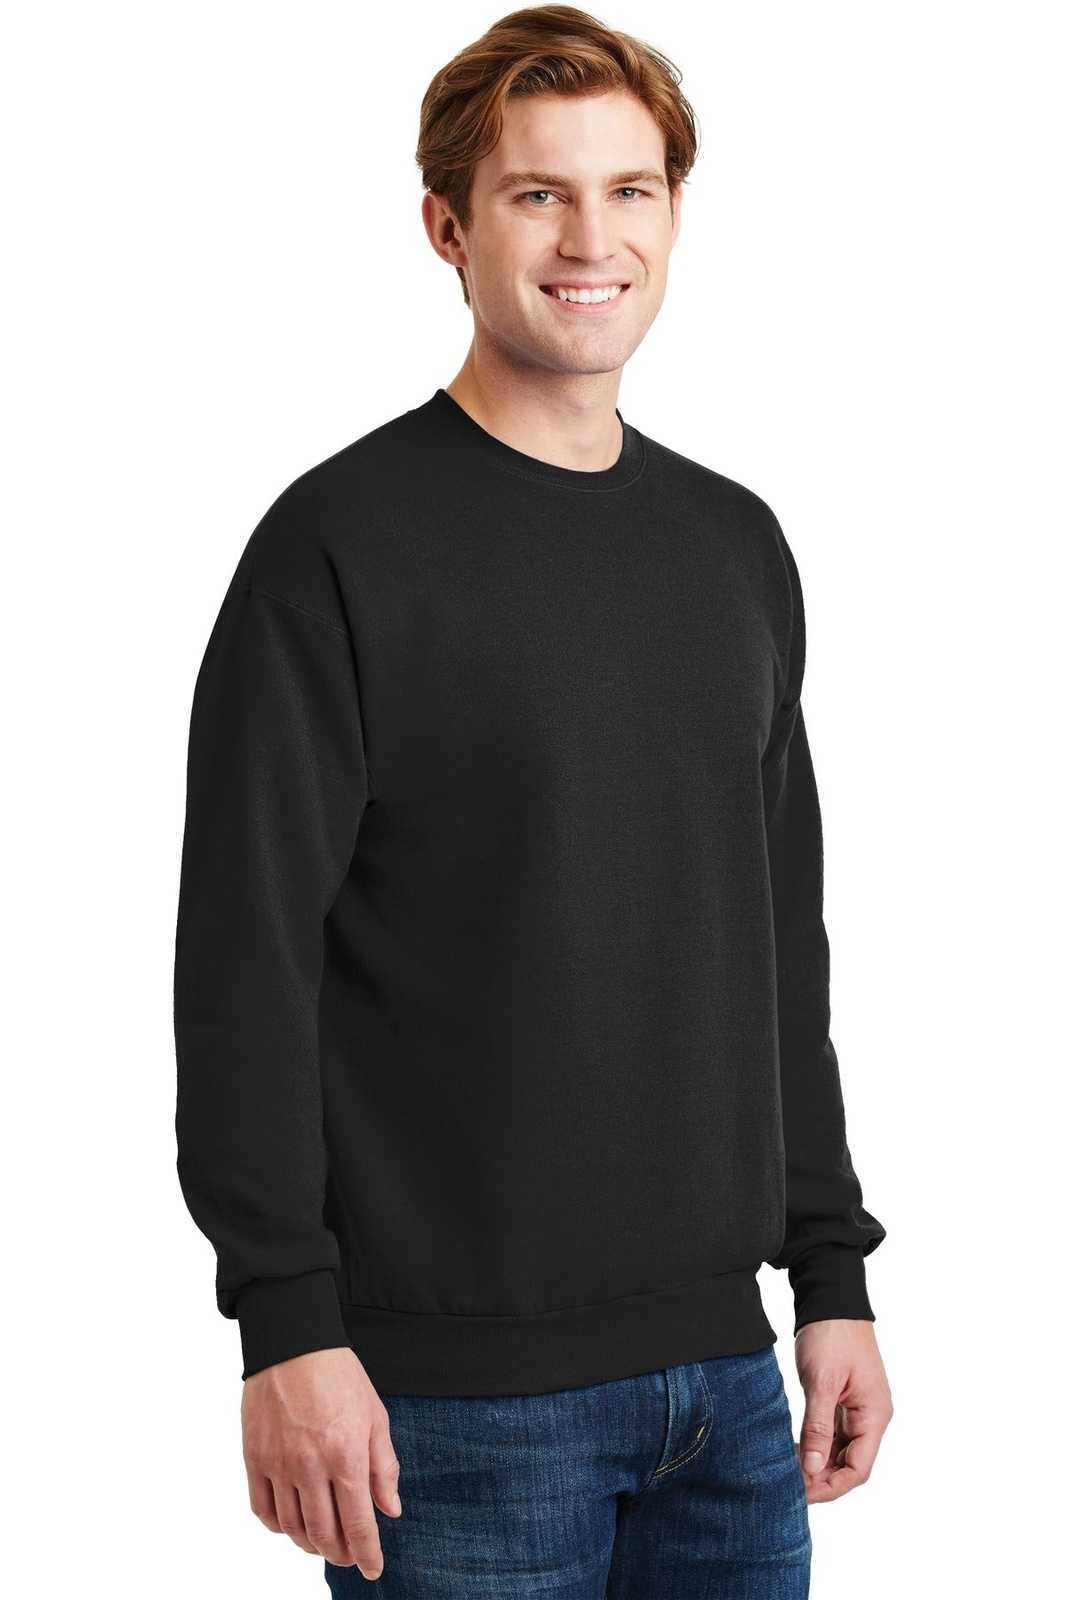 Hanes P160 Ecosmart Crewneck Sweatshirt - Black